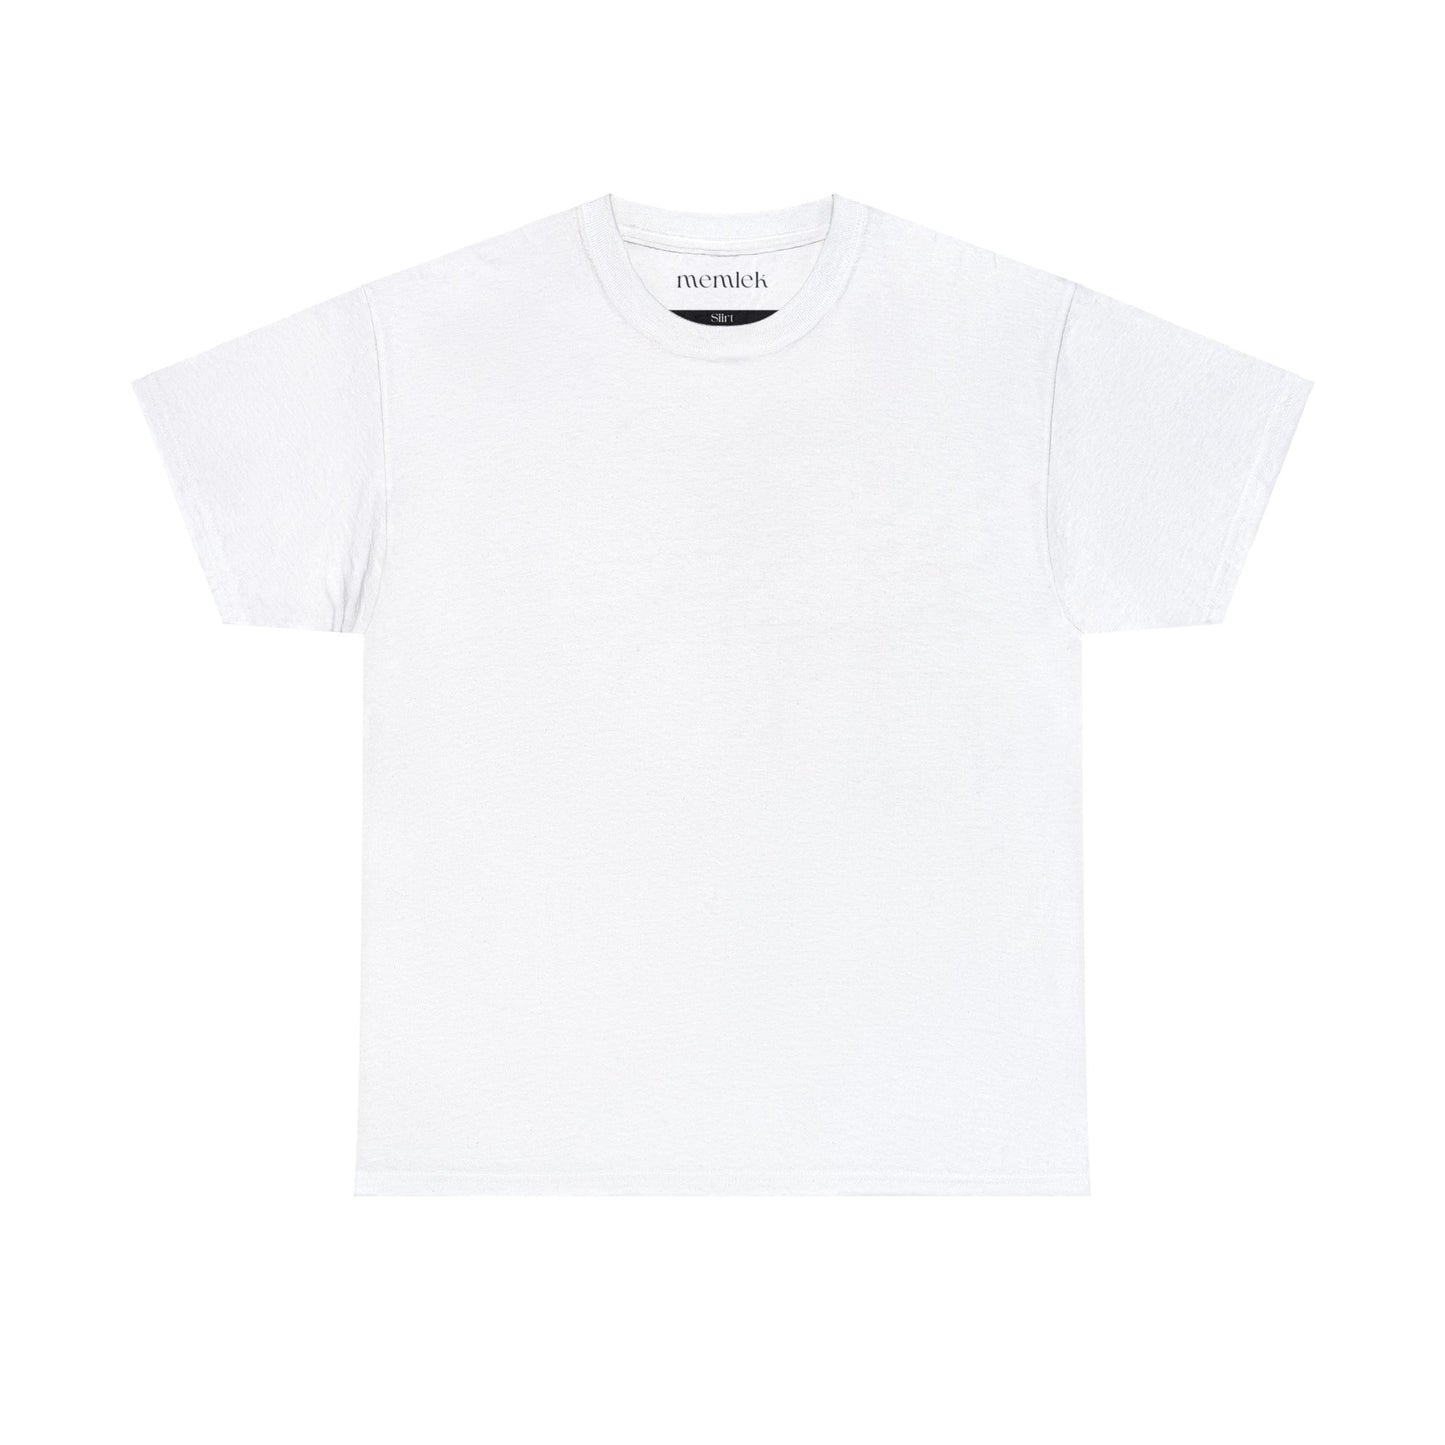 Siyah Lale - 56 Siirt - T-Shirt - Back Print - Black/White